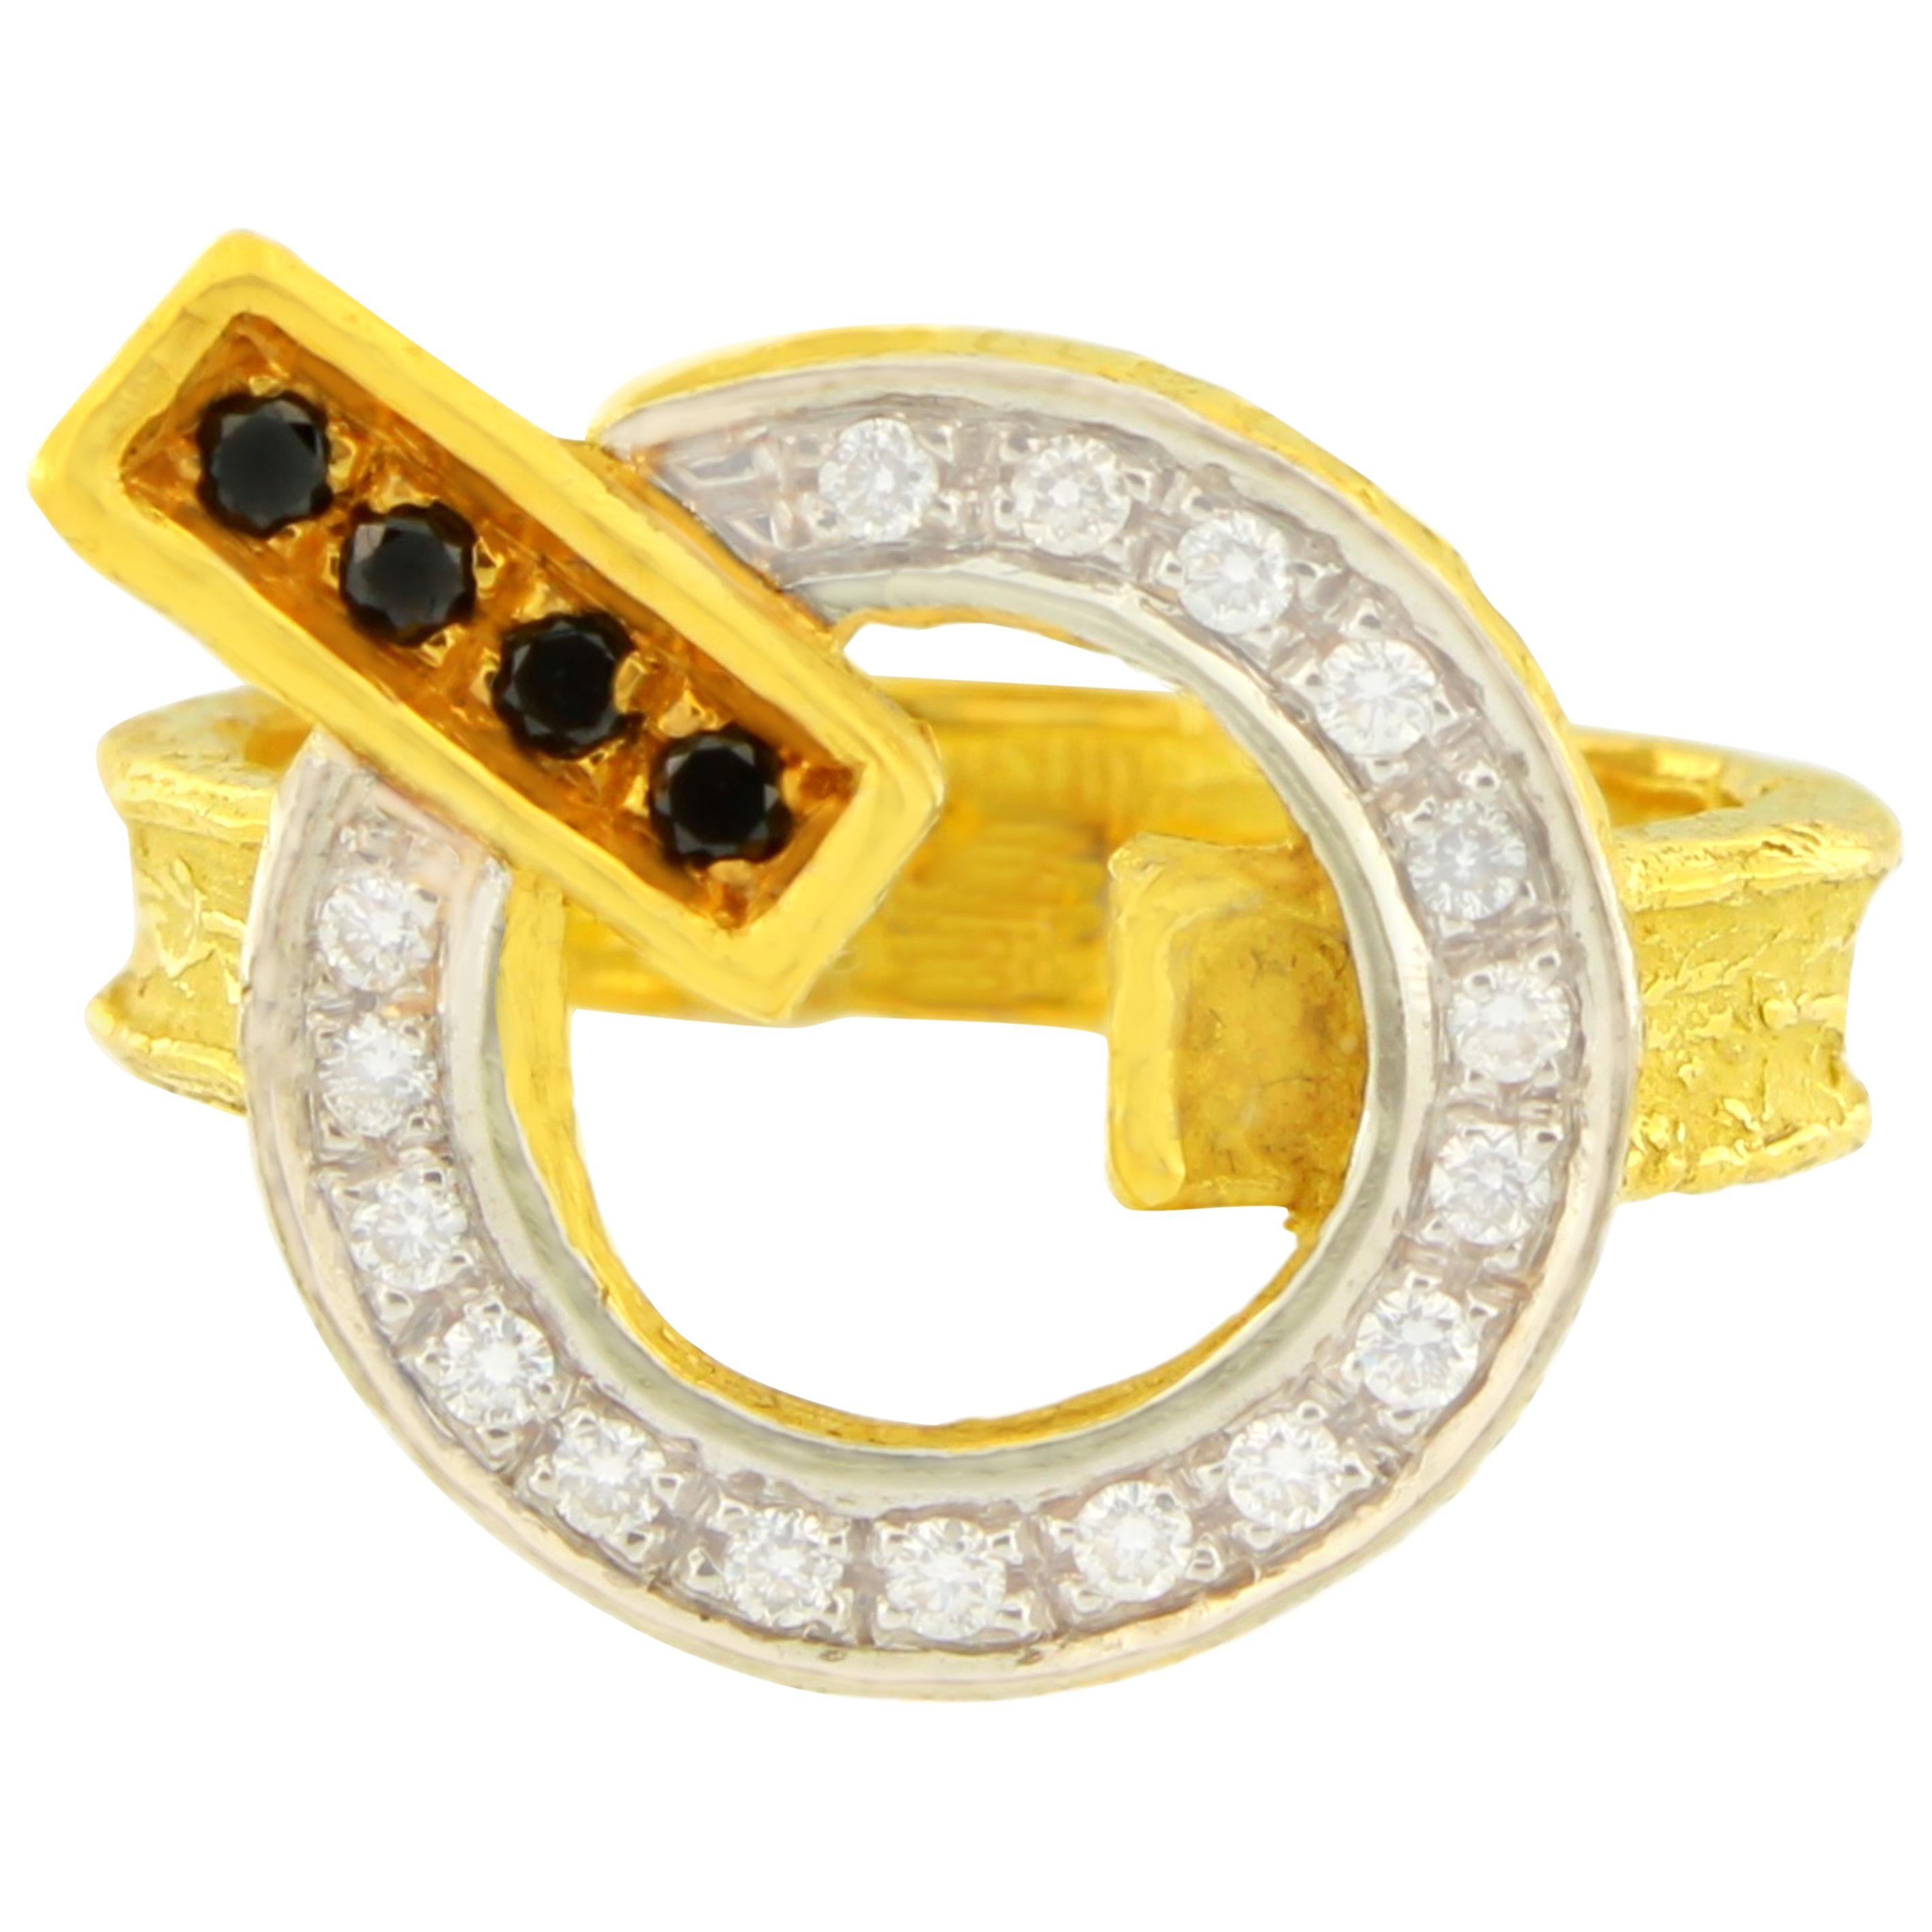 Sacchi Black and White Diamonds Gemstones 18 Karat Yellow Gold Cocktail Ring